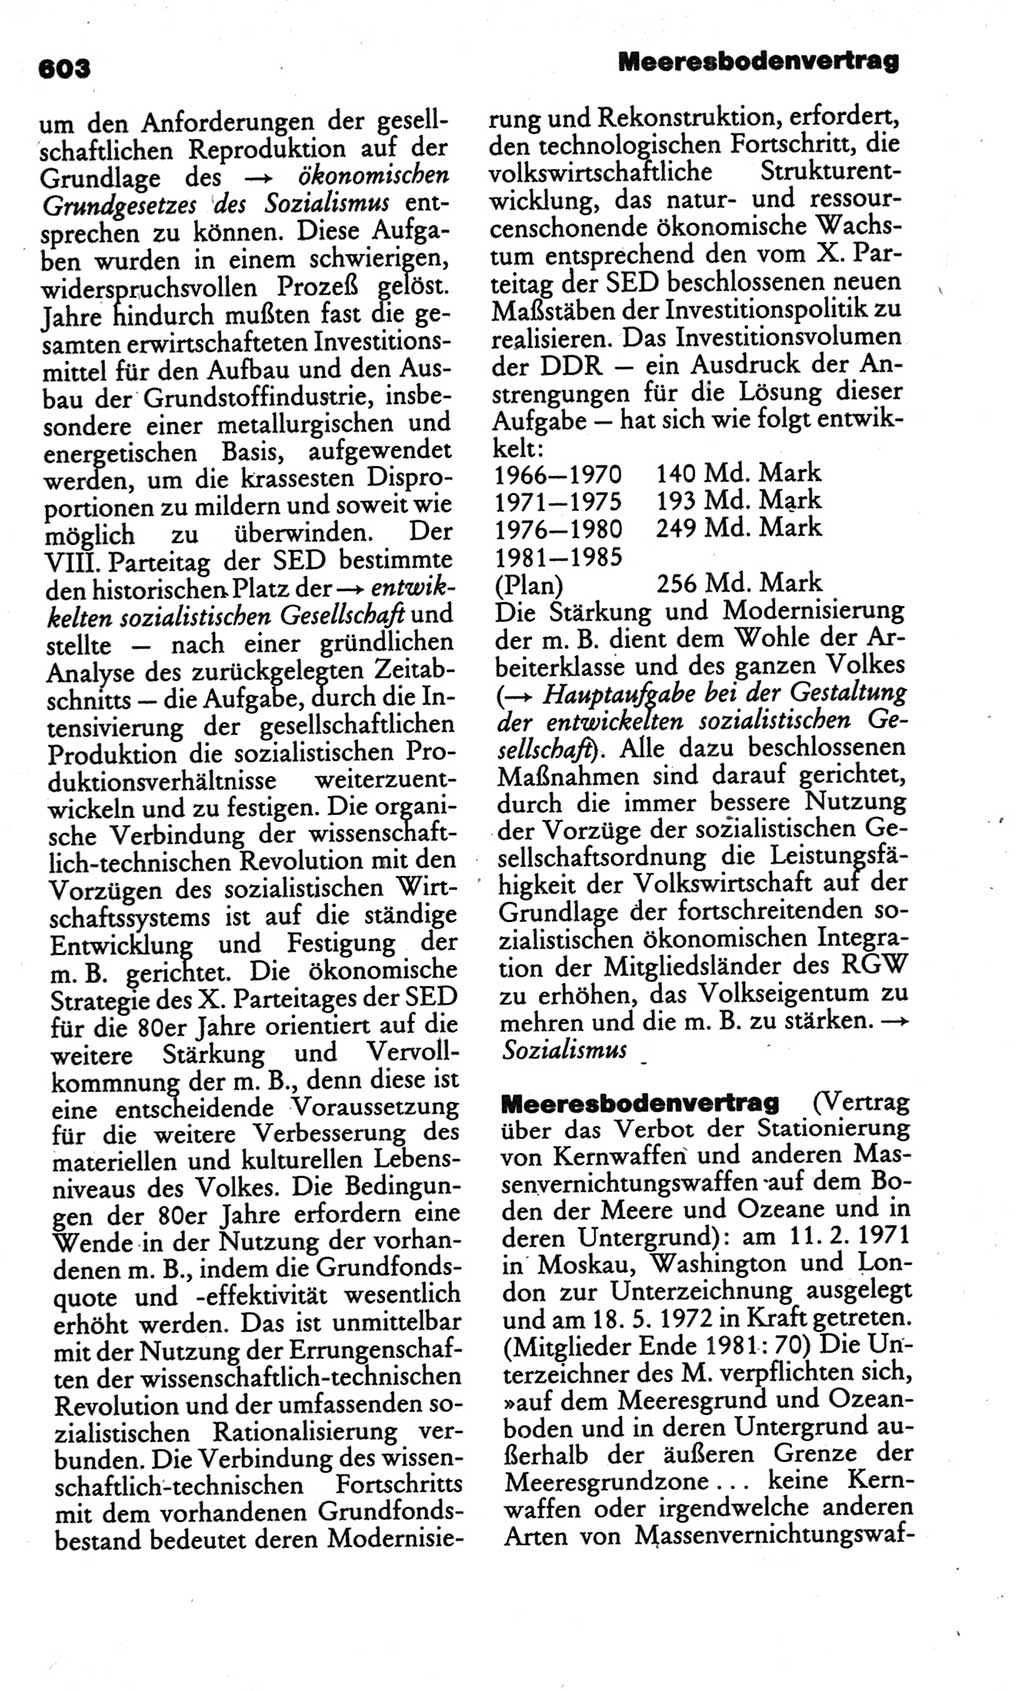 Kleines politisches Wörterbuch [Deutsche Demokratische Republik (DDR)] 1986, Seite 603 (Kl. pol. Wb. DDR 1986, S. 603)